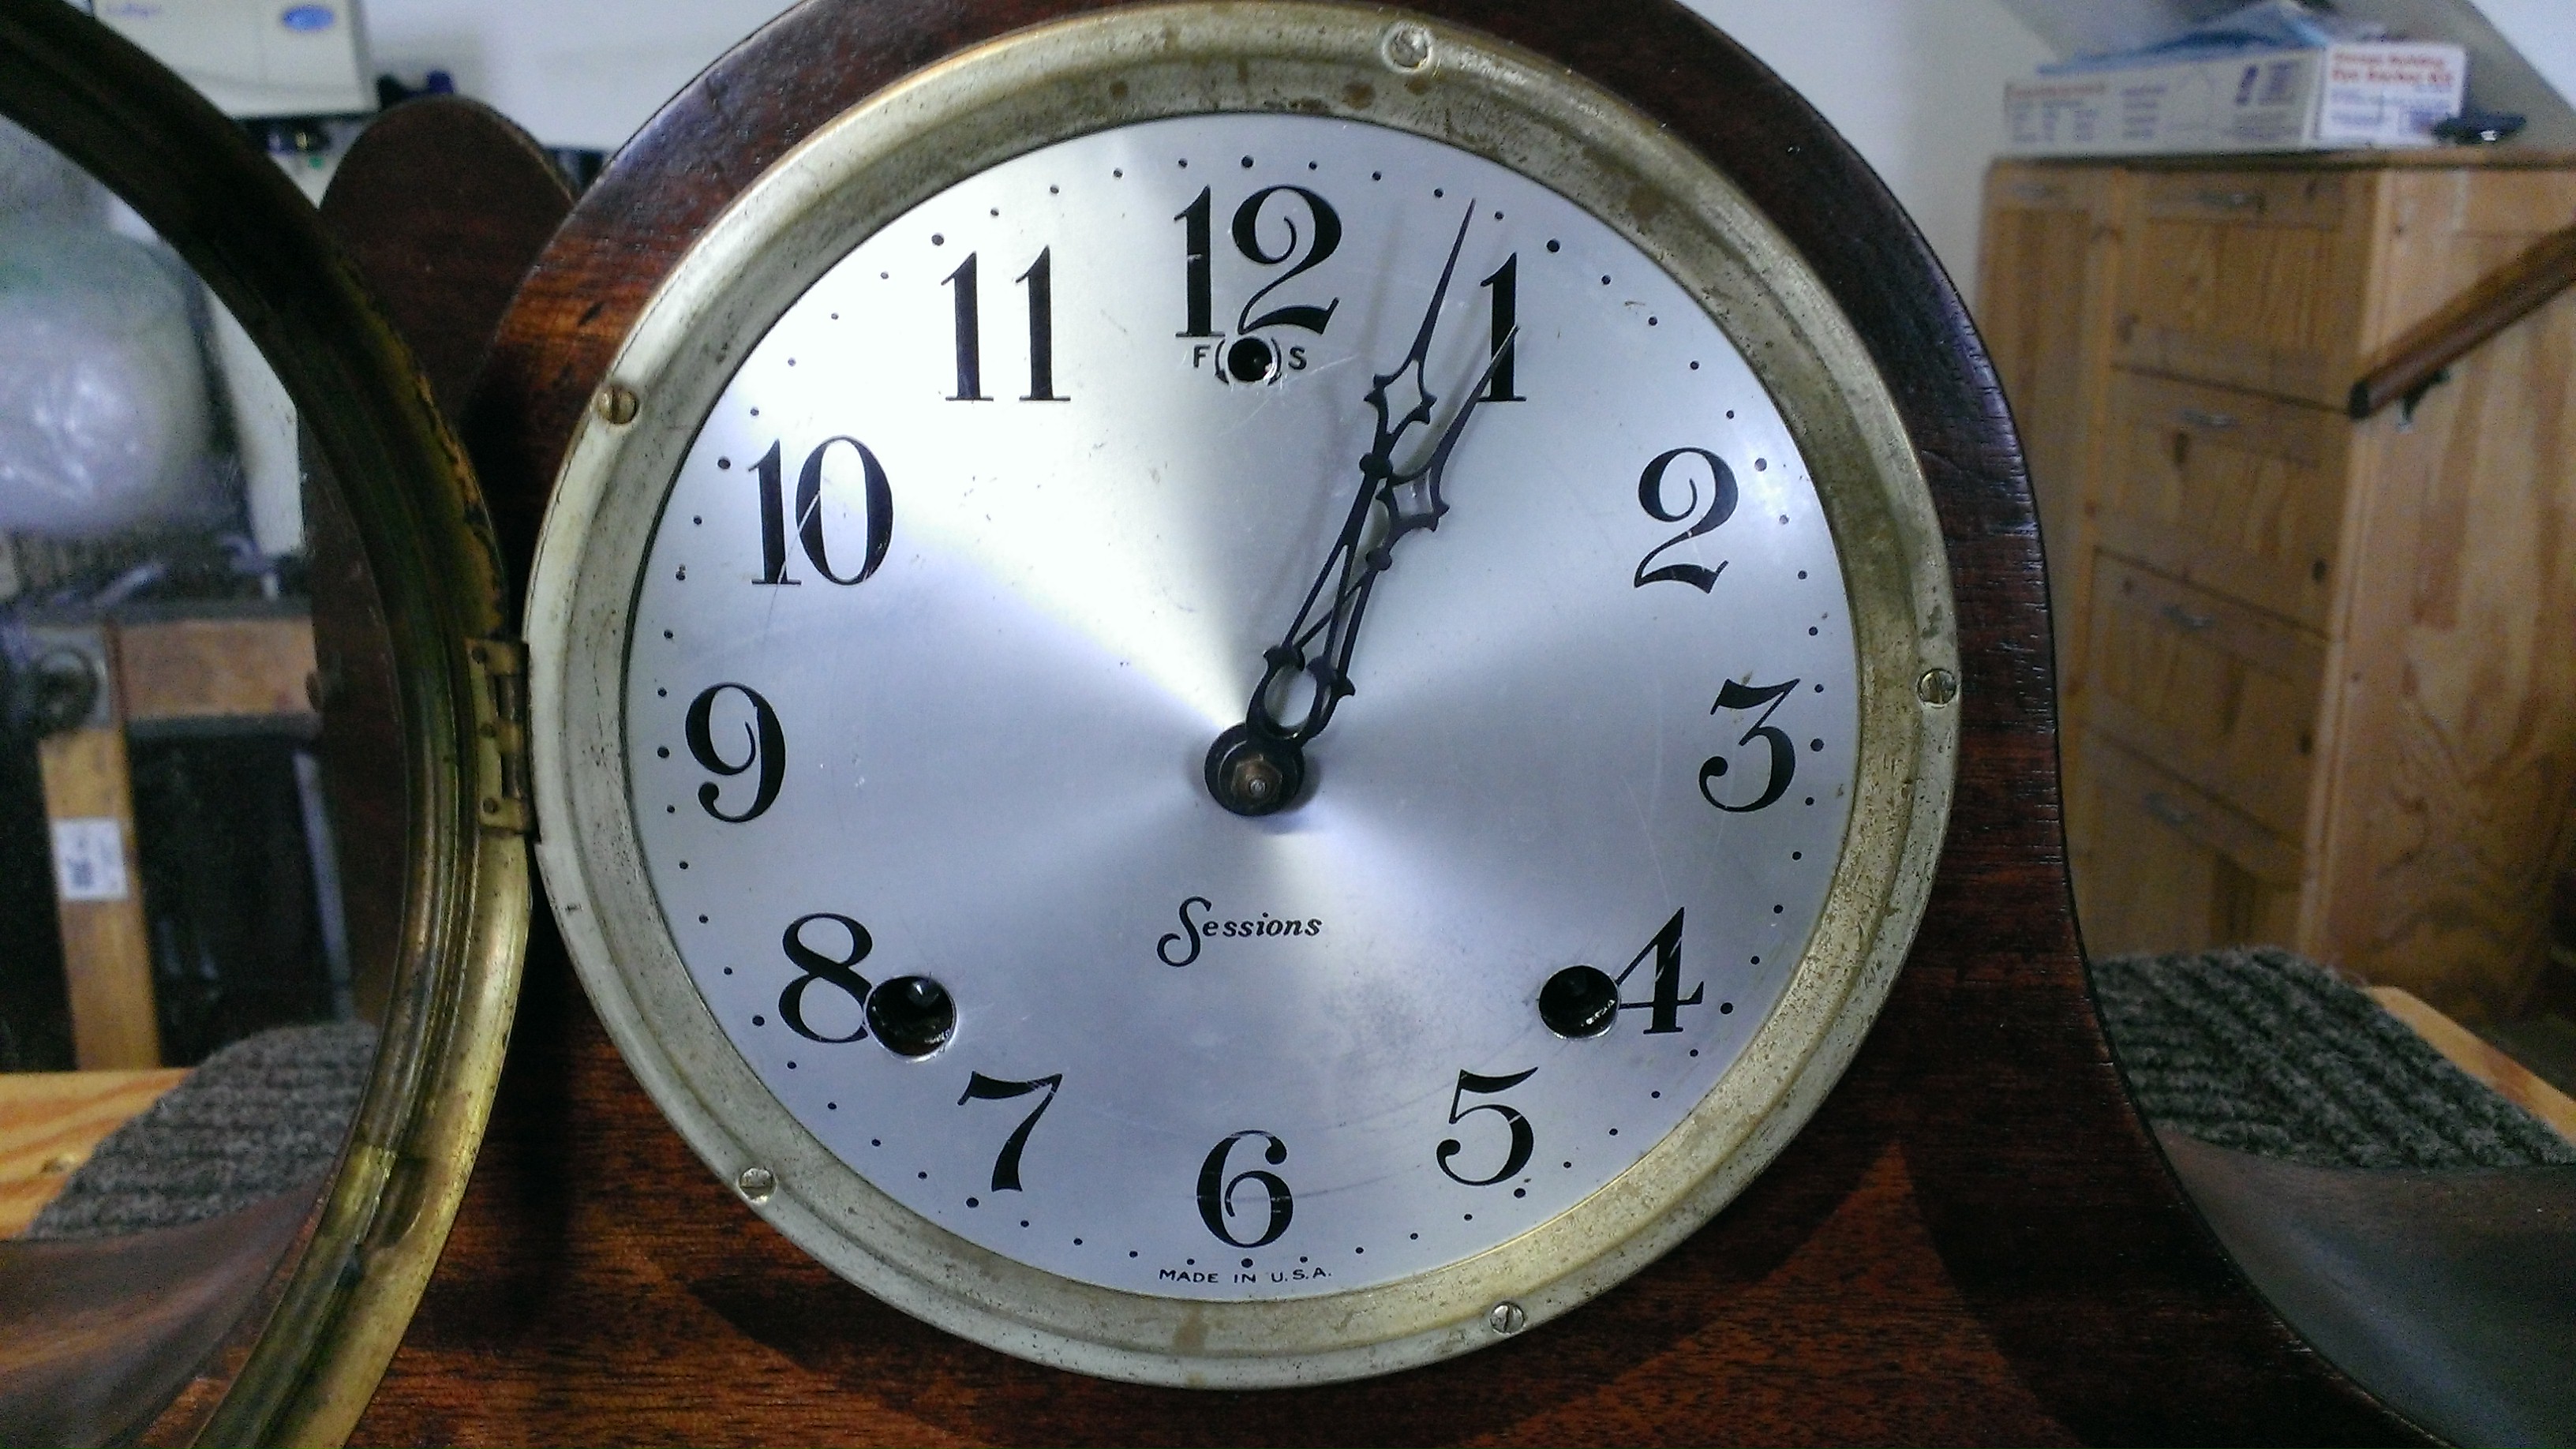 Sessions Tambour Mantel Clock c. 1930 American - Rescue Clocks